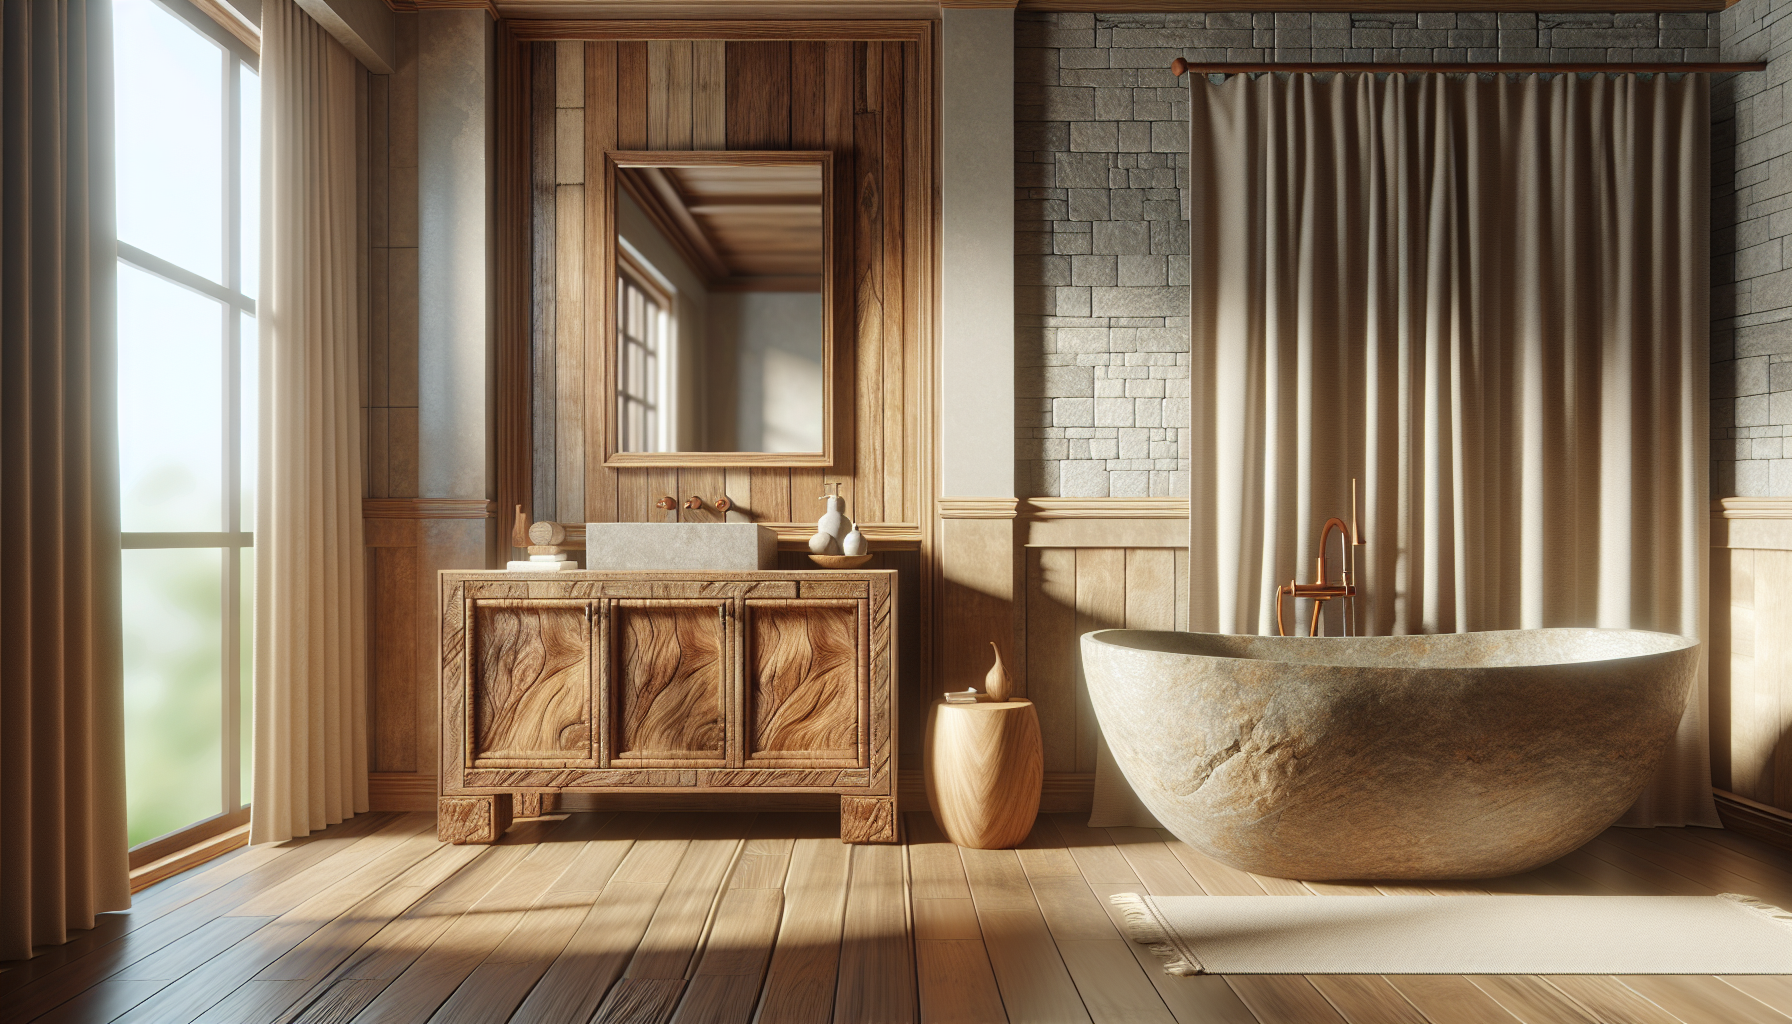 Holz und Stein als Grundelemente im Badezimmer